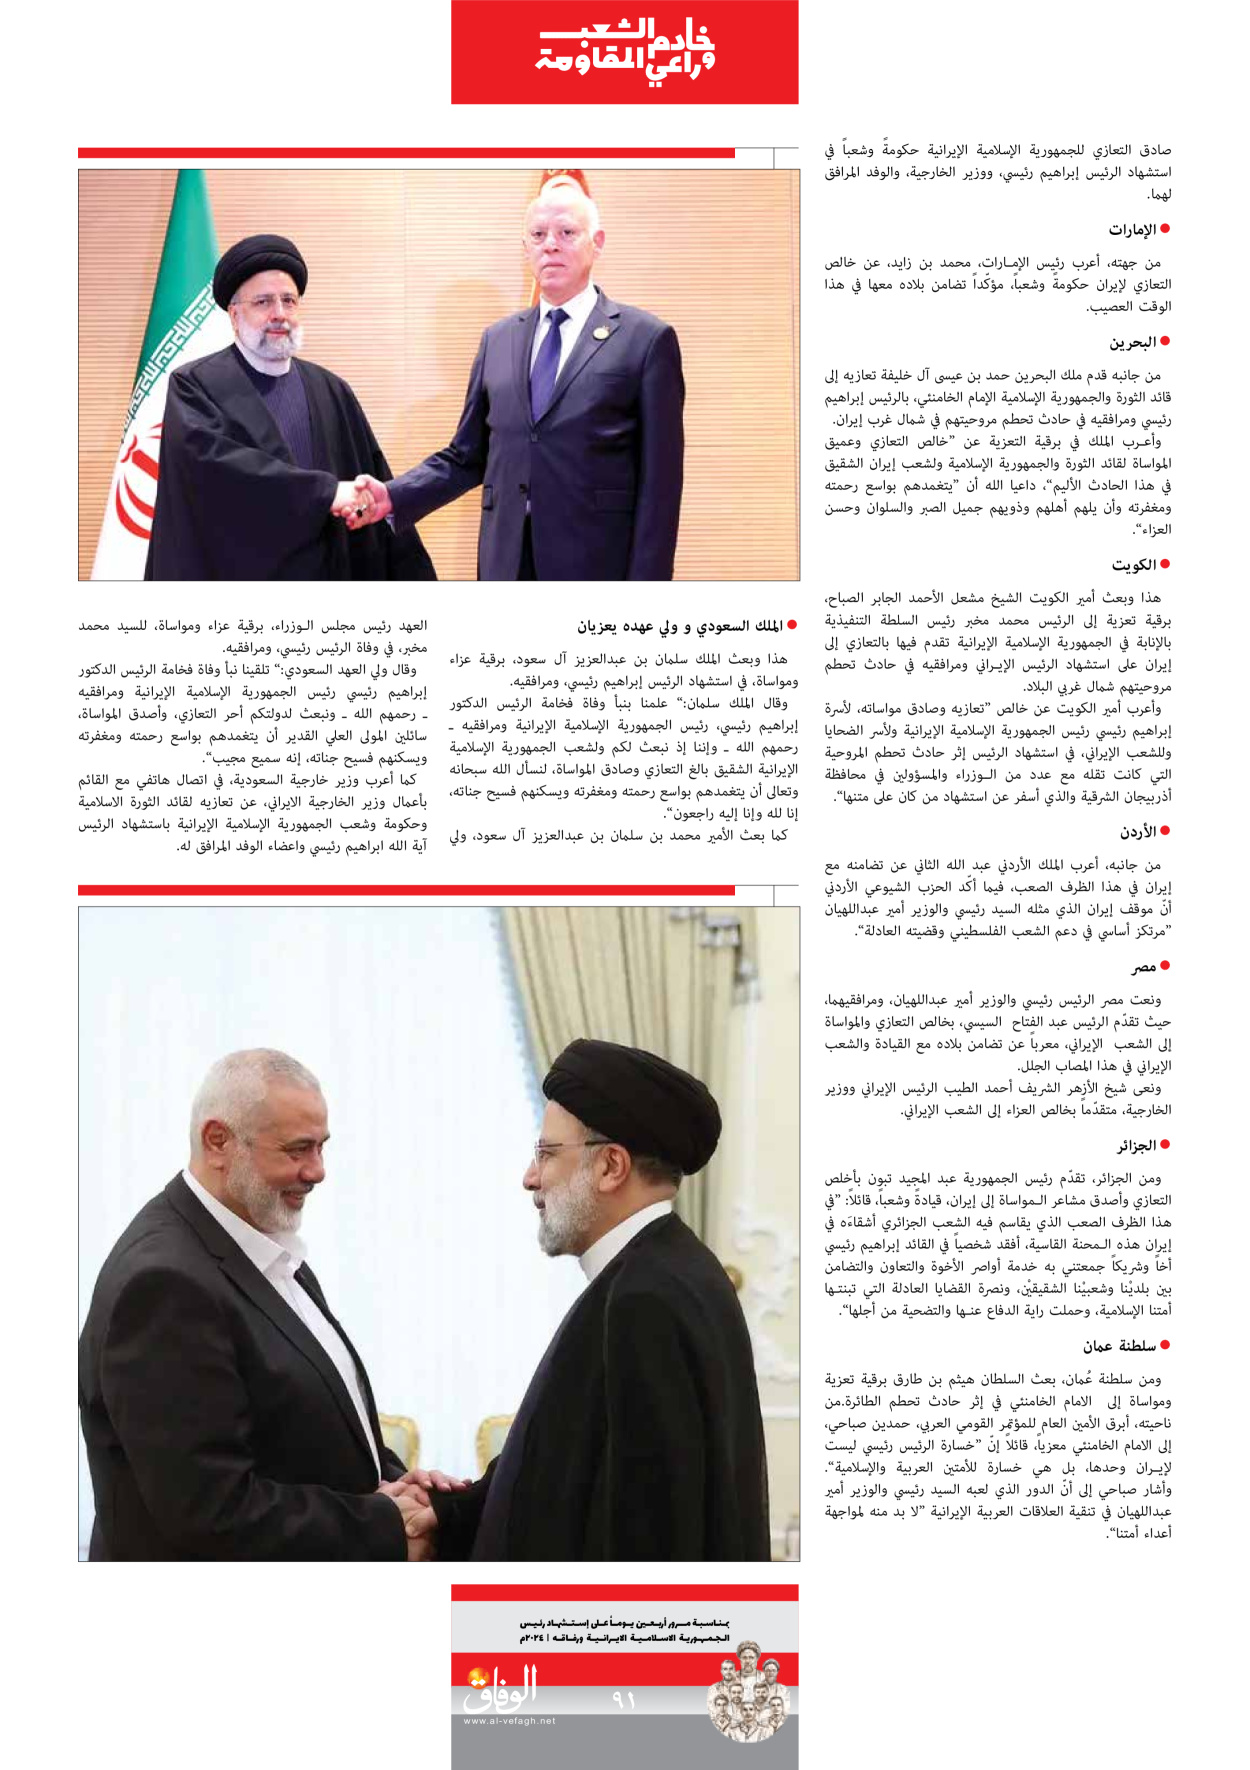 صحیفة ایران الدولیة الوفاق - ملحق ویژه نامه چهلم شهید رییسی - ٢٩ يونيو ٢٠٢٤ - الصفحة ۹۰